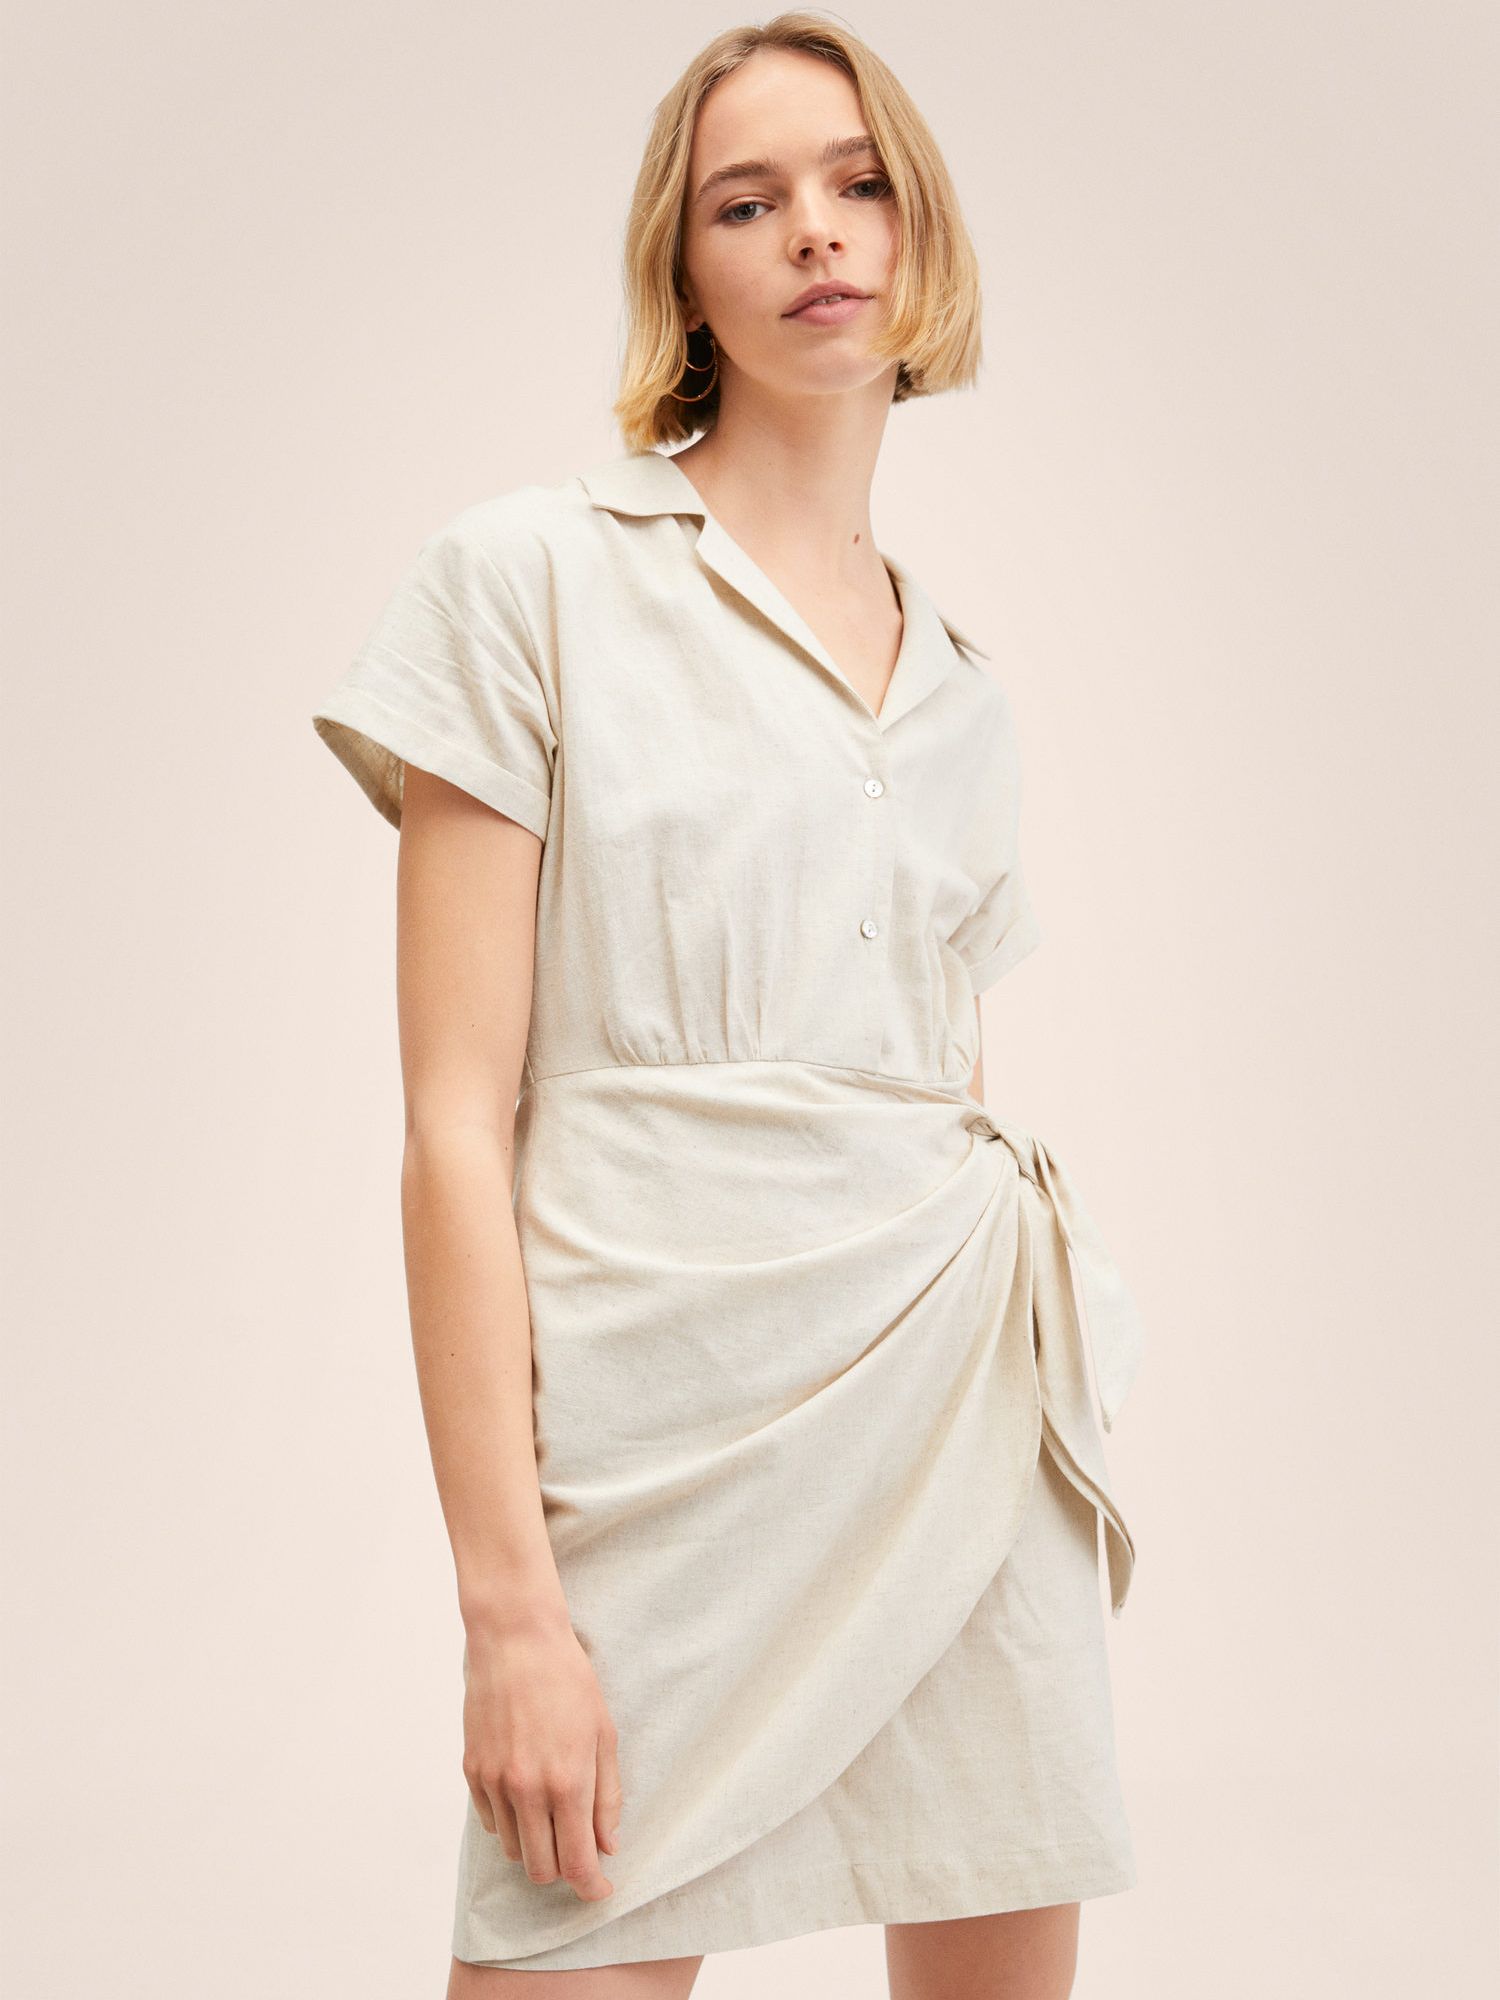 Mango Nieve Linen Blend Shirt Dress, Beige at John Lewis & Partners